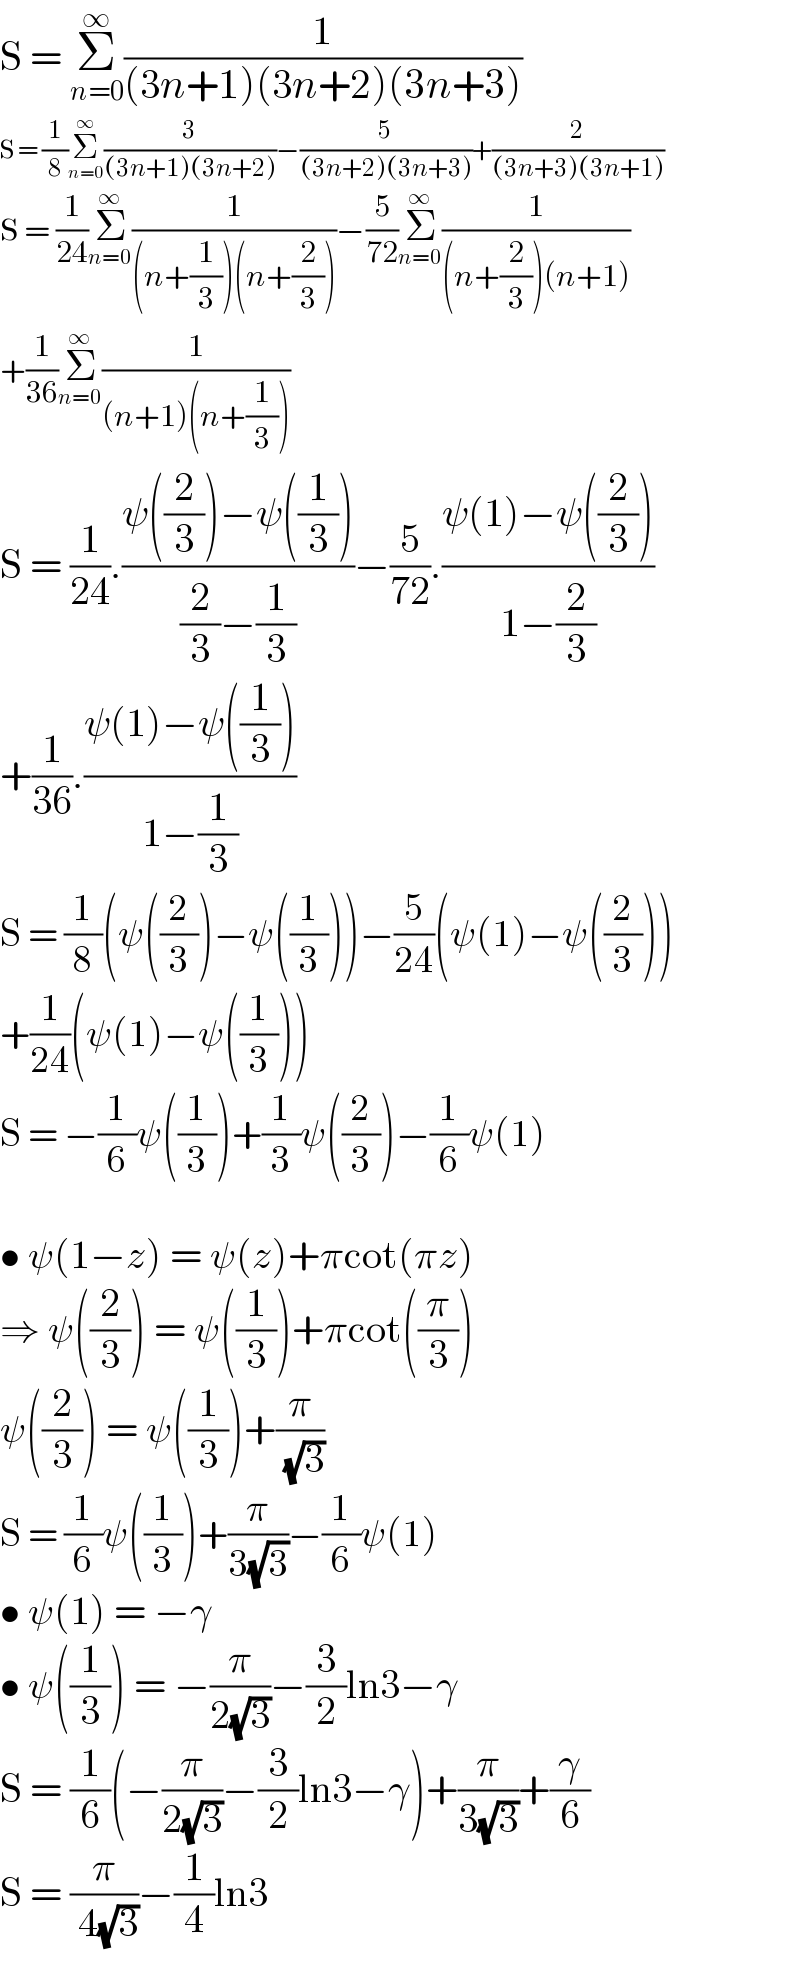 S = Î£_(n=0) ^âˆž (1/((3n+1)(3n+2)(3n+3)))  S = (1/8)Î£_(n=0) ^âˆž (3/((3n+1)(3n+2)))âˆ’(5/((3n+2)(3n+3)))+(2/((3n+3)(3n+1)))  S = (1/(24))Î£_(n=0) ^âˆž (1/((n+(1/3))(n+(2/3))))âˆ’(5/(72))Î£_(n=0) ^âˆž (1/((n+(2/3))(n+1)))  +(1/(36))Î£_(n=0) ^âˆž (1/((n+1)(n+(1/3))))  S = (1/(24)).((Ïˆ((2/3))âˆ’Ïˆ((1/3)))/((2/3)âˆ’(1/3)))âˆ’(5/(72)).((Ïˆ(1)âˆ’Ïˆ((2/3)))/(1âˆ’(2/3)))  +(1/(36)).((Ïˆ(1)âˆ’Ïˆ((1/3)))/(1âˆ’(1/3)))  S = (1/8)(Ïˆ((2/3))âˆ’Ïˆ((1/3)))âˆ’(5/(24))(Ïˆ(1)âˆ’Ïˆ((2/3)))  +(1/(24))(Ïˆ(1)âˆ’Ïˆ((1/3)))  S = âˆ’(1/6)Ïˆ((1/3))+(1/3)Ïˆ((2/3))âˆ’(1/6)Ïˆ(1)    â€¢ Ïˆ(1âˆ’z) = Ïˆ(z)+Ï€cot(Ï€z)  â‡’ Ïˆ((2/3)) = Ïˆ((1/3))+Ï€cot((Ï€/3))  Ïˆ((2/3)) = Ïˆ((1/3))+(Ï€/( (âˆš3)))  S = (1/6)Ïˆ((1/3))+(Ï€/(3(âˆš3)))âˆ’(1/6)Ïˆ(1)  â€¢ Ïˆ(1) = âˆ’Î³  â€¢ Ïˆ((1/3)) = âˆ’(Ï€/(2(âˆš3)))âˆ’(3/2)ln3âˆ’Î³  S = (1/6)(âˆ’(Ï€/(2(âˆš3)))âˆ’(3/2)ln3âˆ’Î³)+(Ï€/(3(âˆš3)))+(Î³/6)  S = (Ï€/( 4(âˆš3)))âˆ’(1/4)ln3  